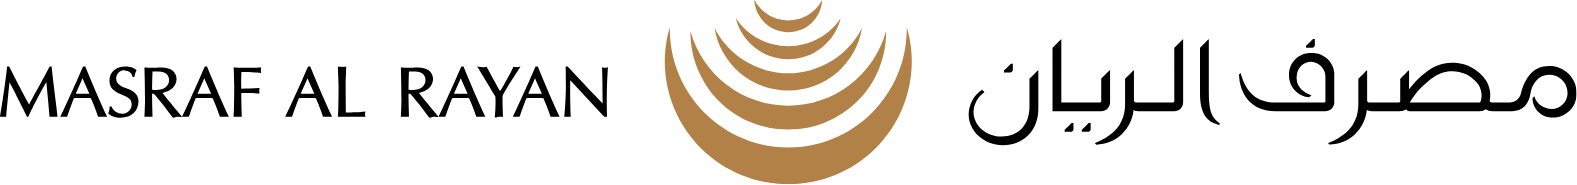 Masraf Al Rayan logo large (transparent PNG)